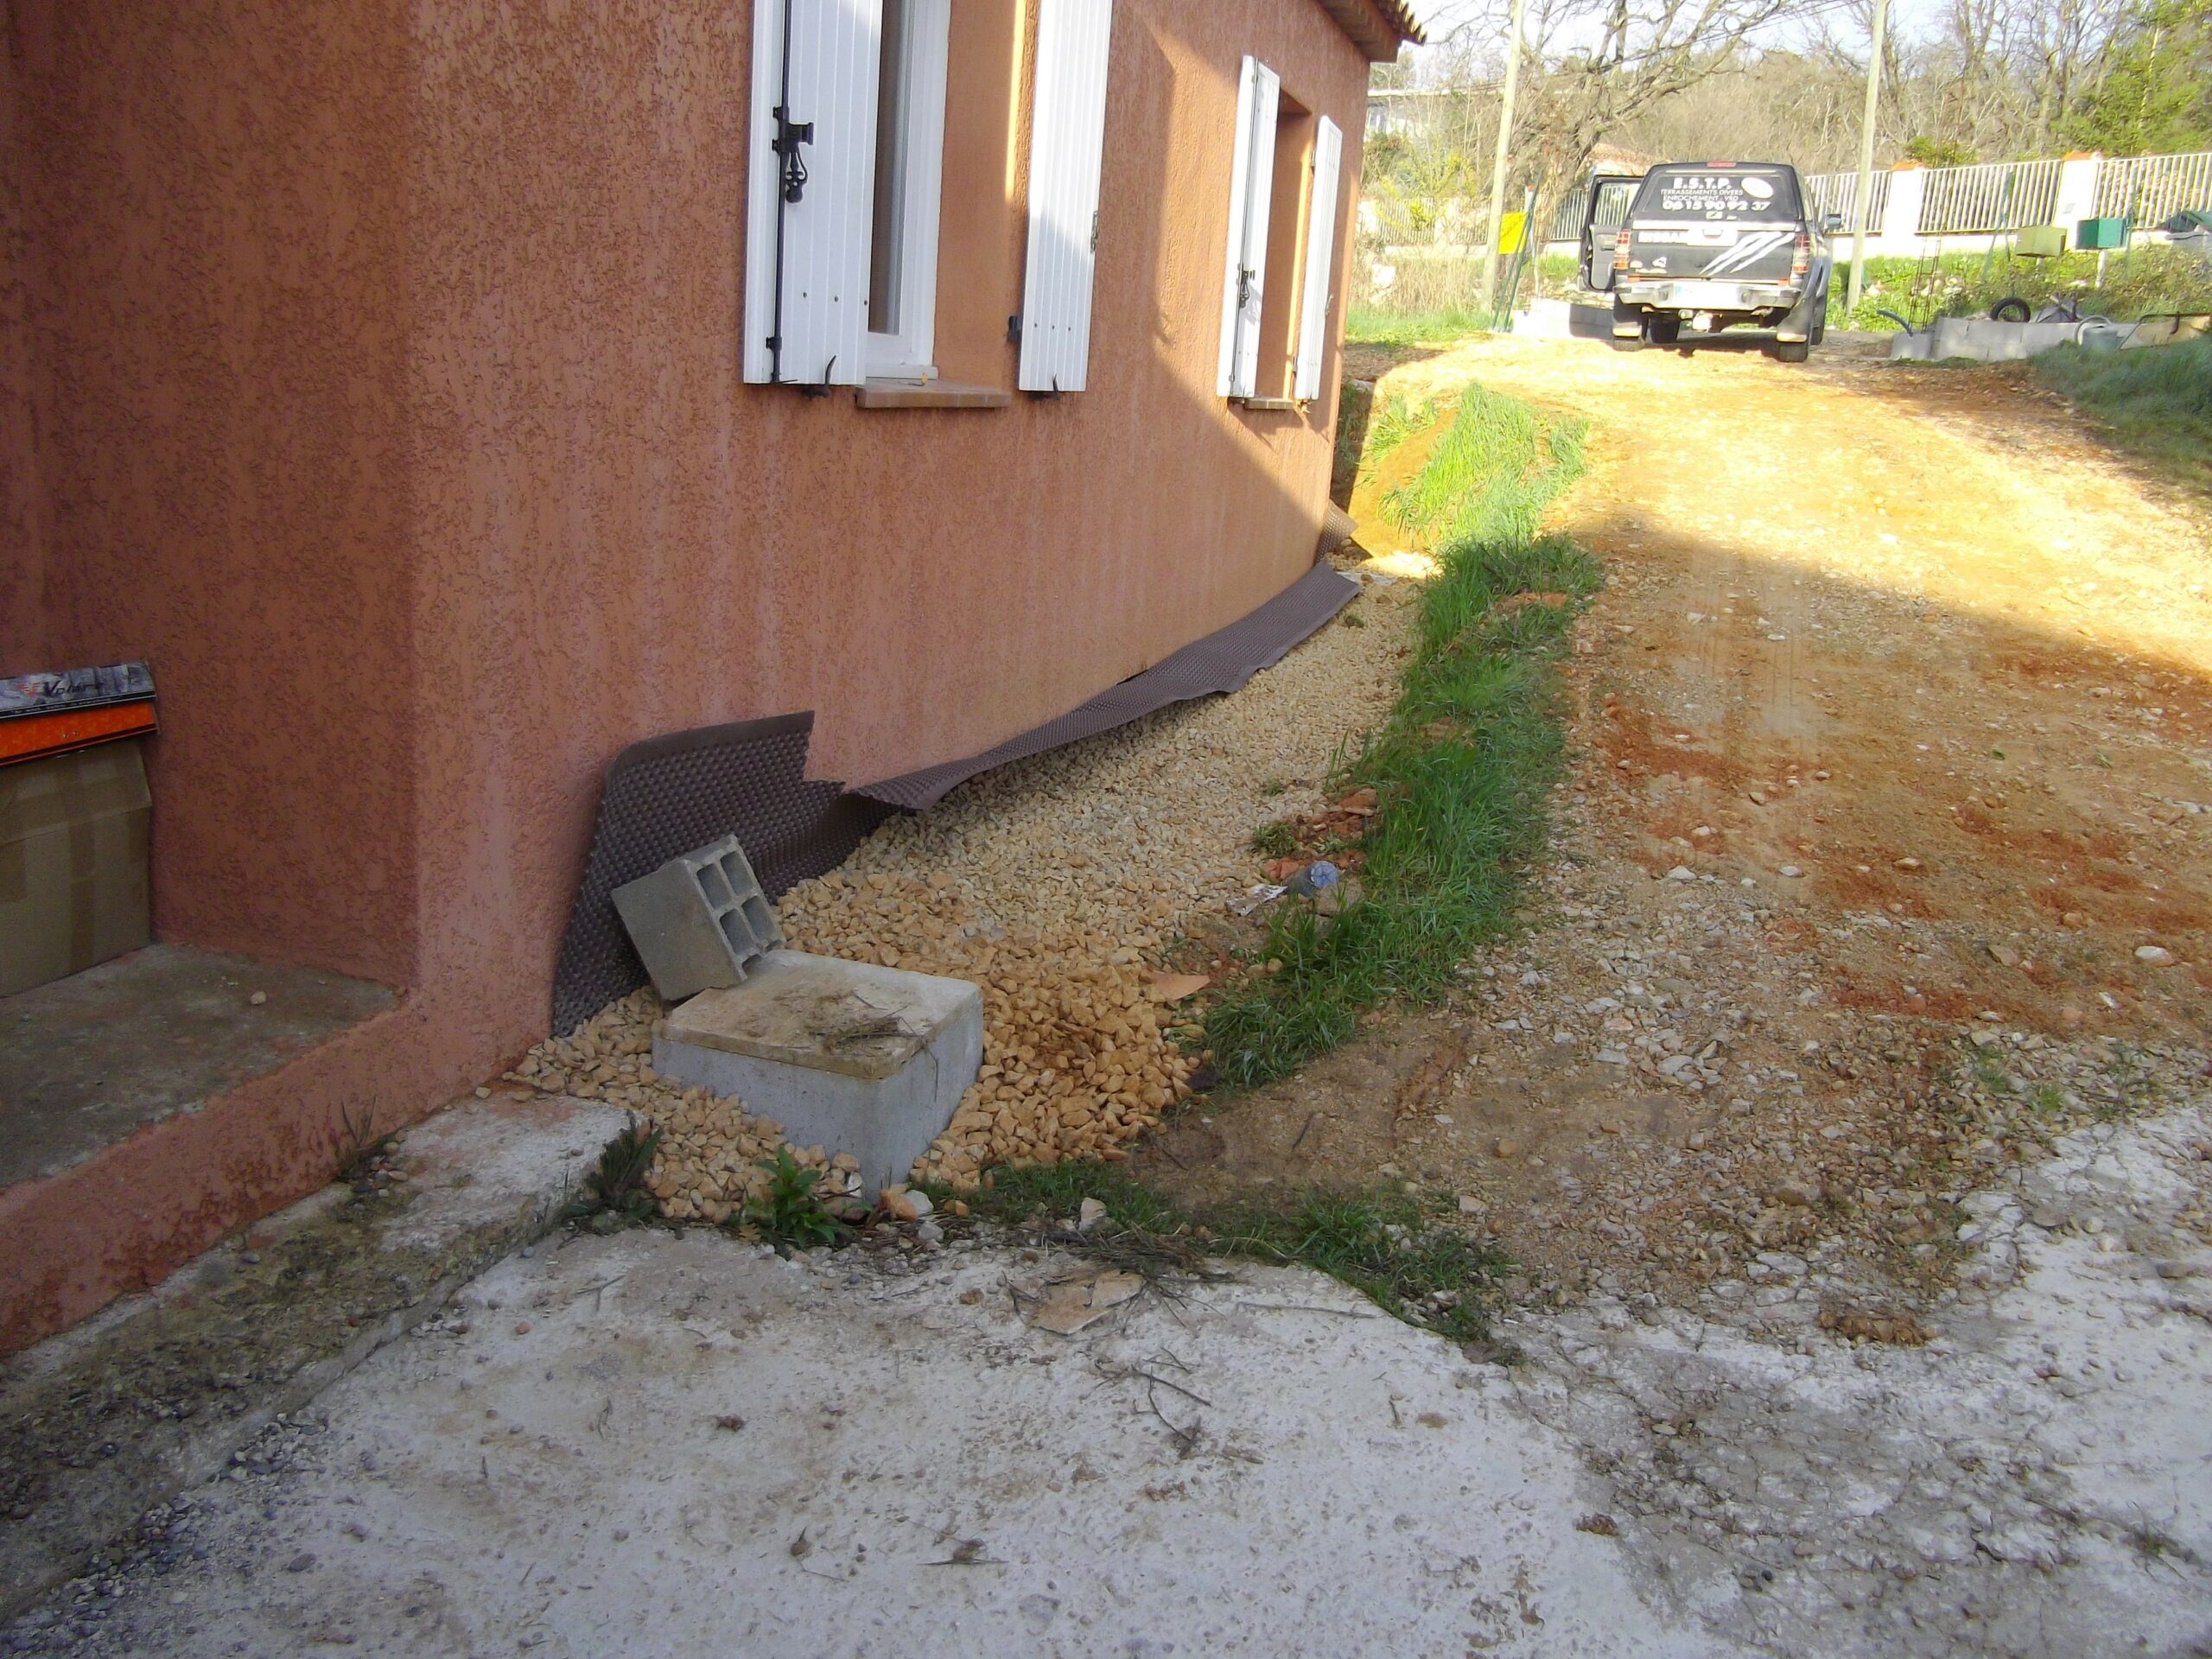 ESTP Terrassement - Réalisation d’un chemin piétonnier en graviers 16/31 en périphérie de la maison par-dessus les drains.